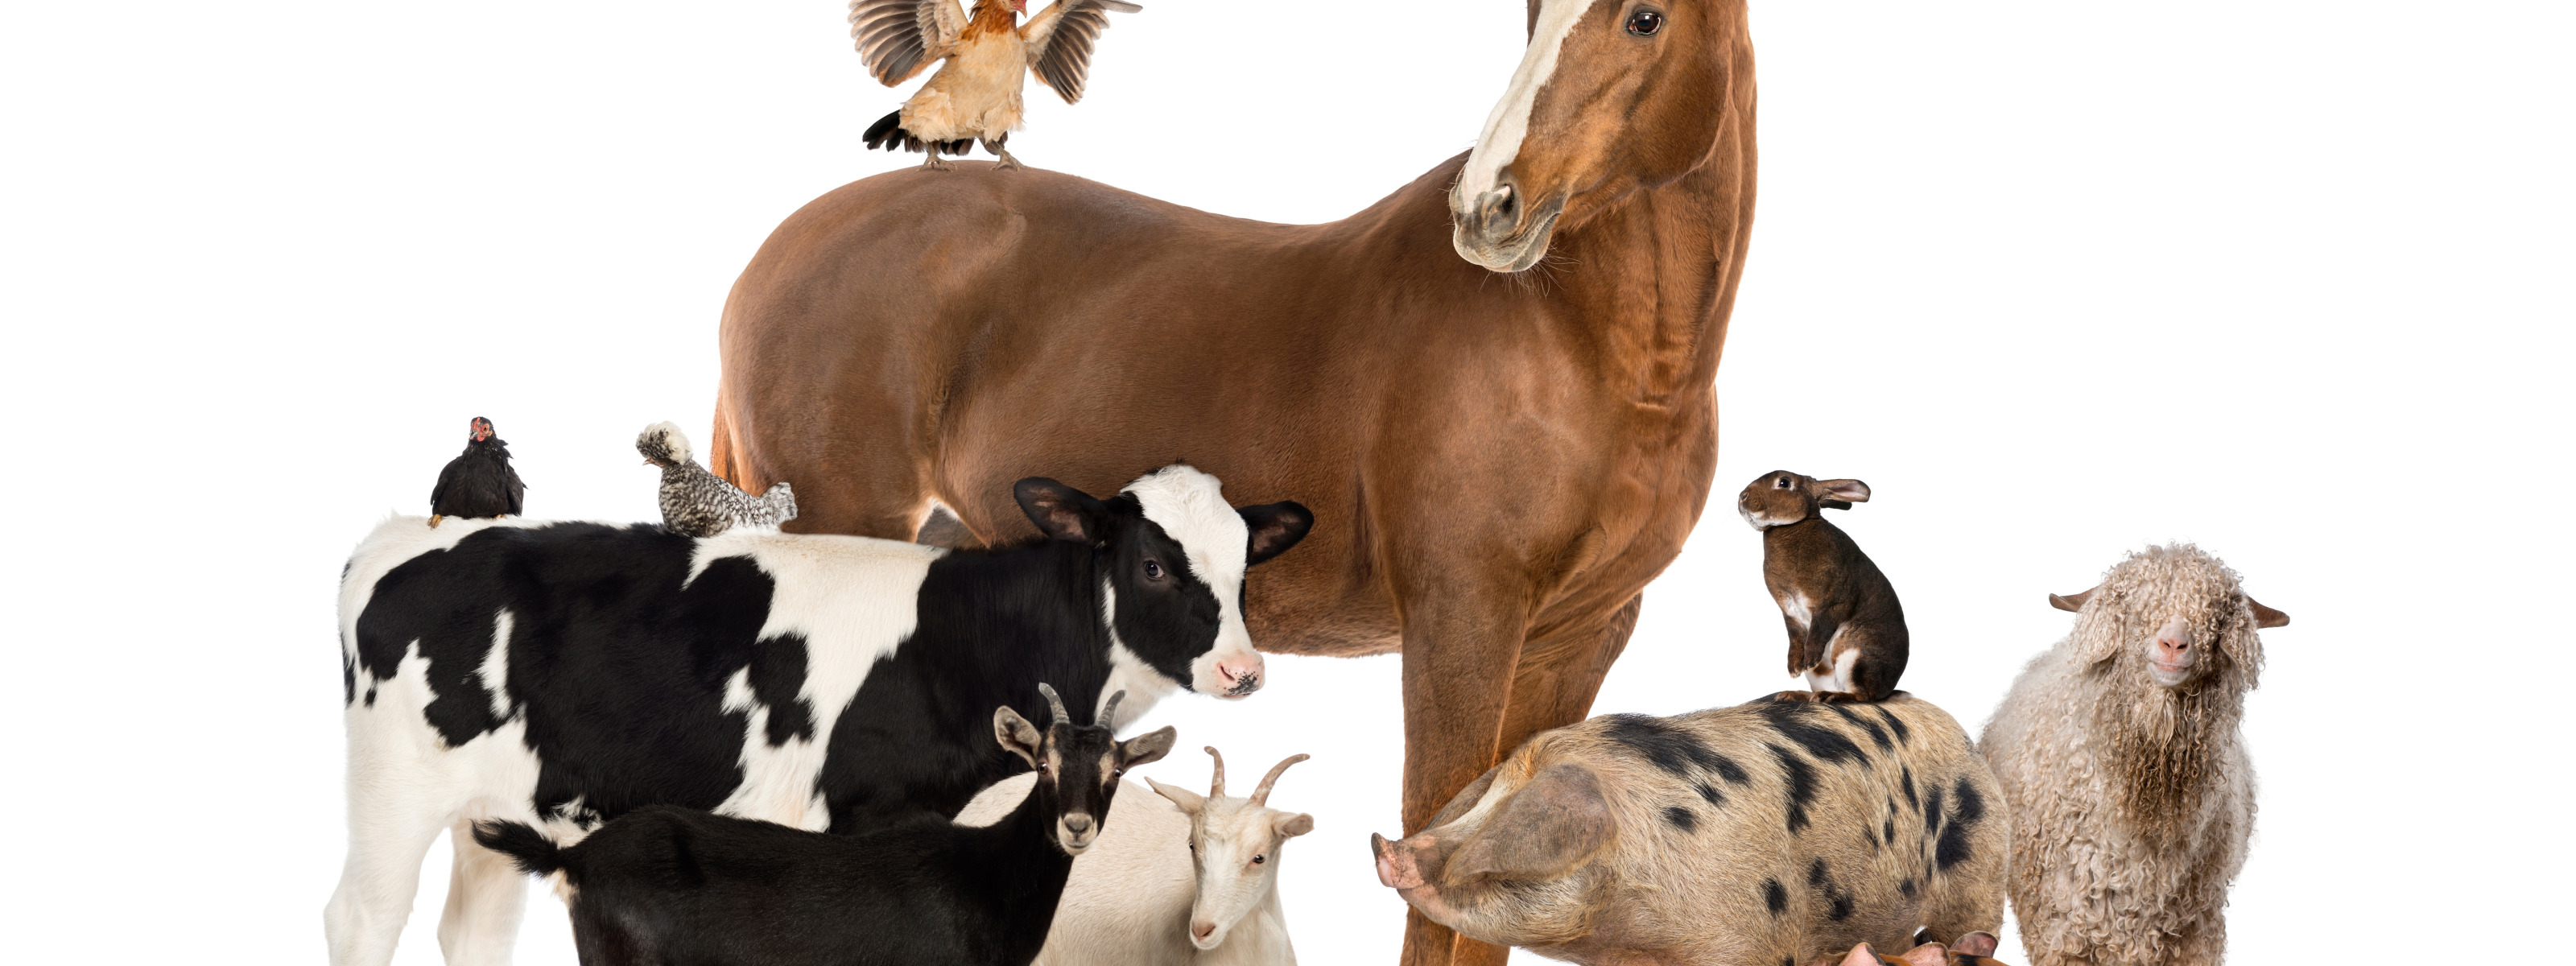 Лошади коровы и куры. Сельскохозяйственных животных. Сельскохозяйственные животные. Домашние сельскохозяйственные животные. Сельскохозяйственные животные для детей.